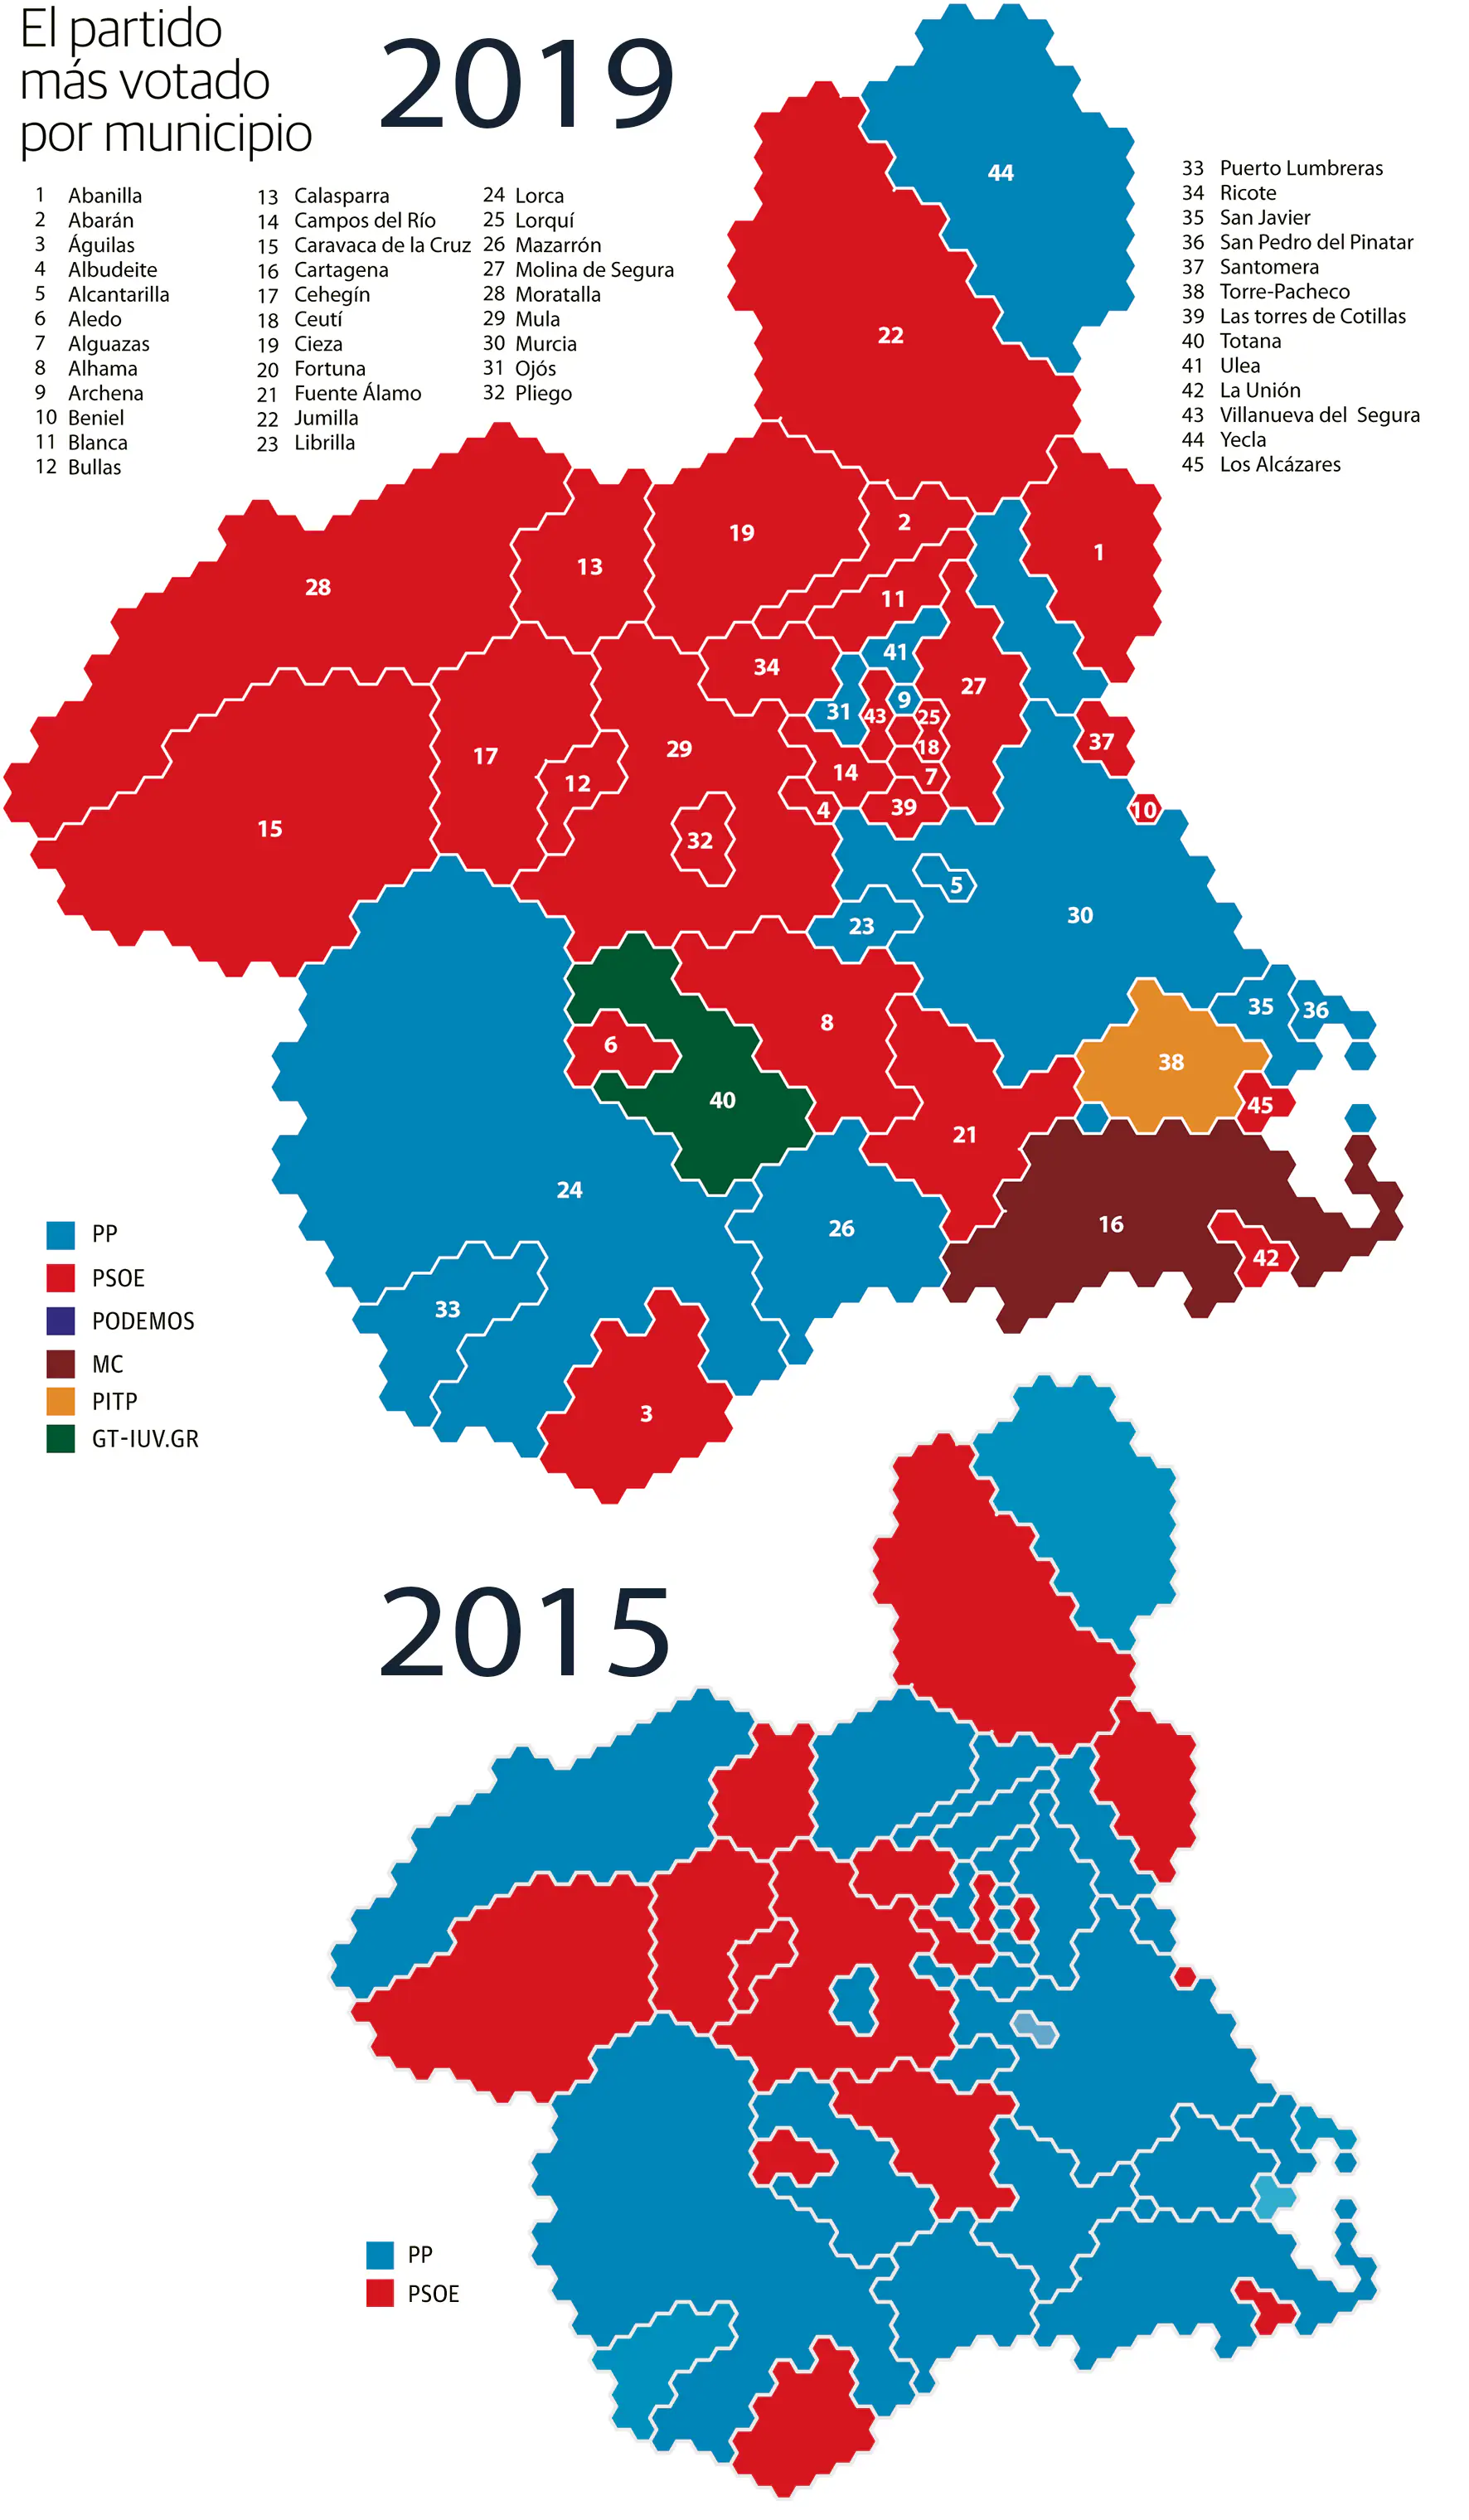 Resultados de las elecciones municipales de 2015 y 2019 en los municipios de las Región.